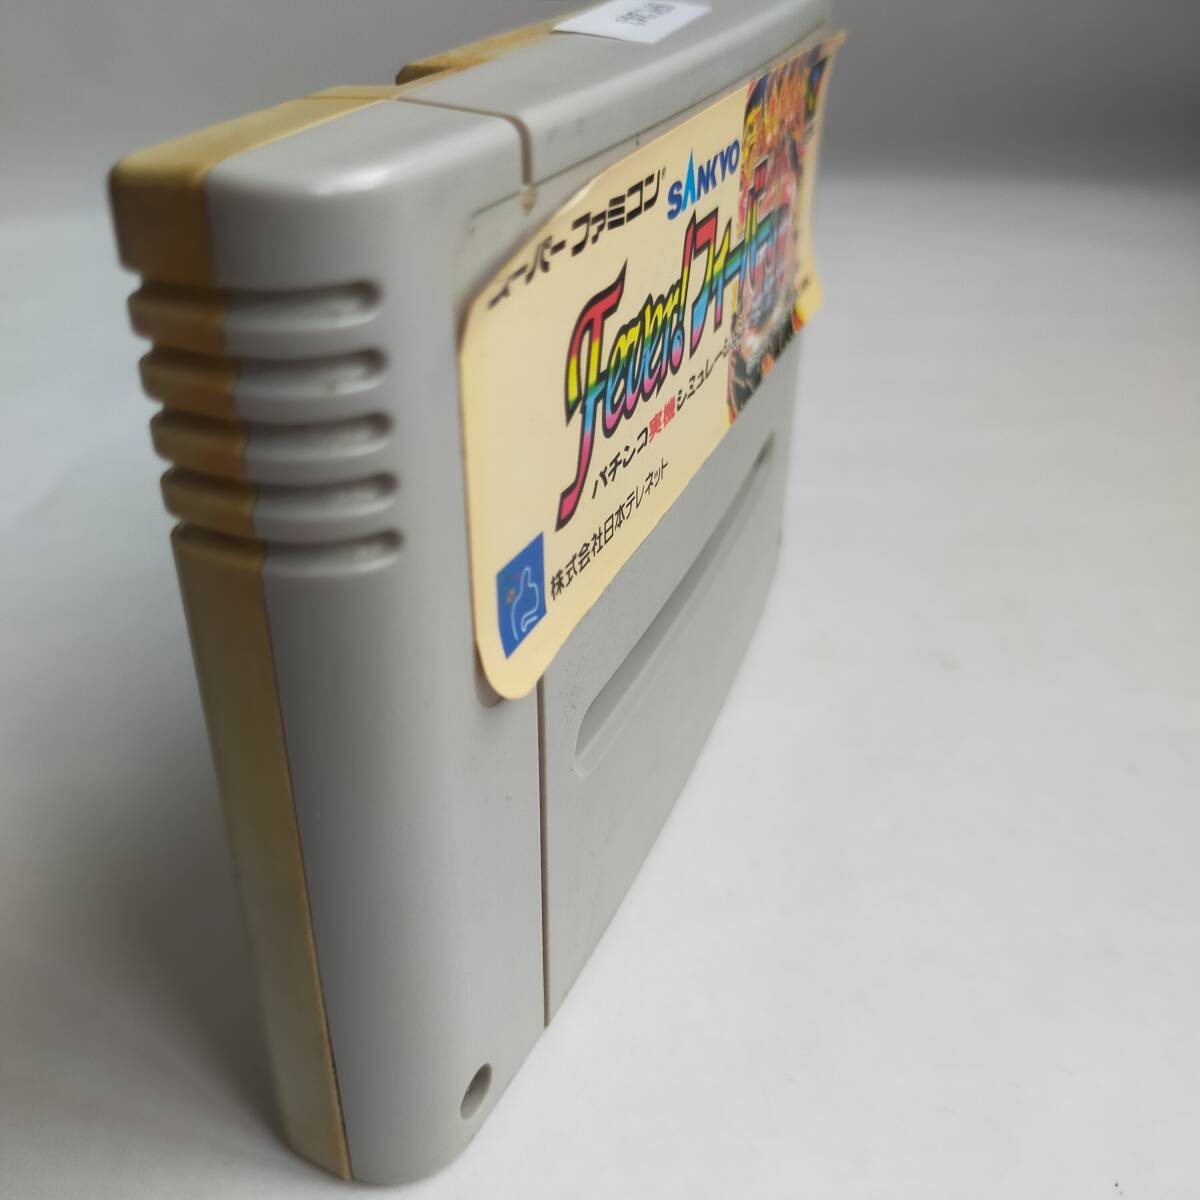 SANKYOfi- балка fi- балка Super Famicom рабочее состояние подтверждено * терминал чистка settled [SFC5565_243]